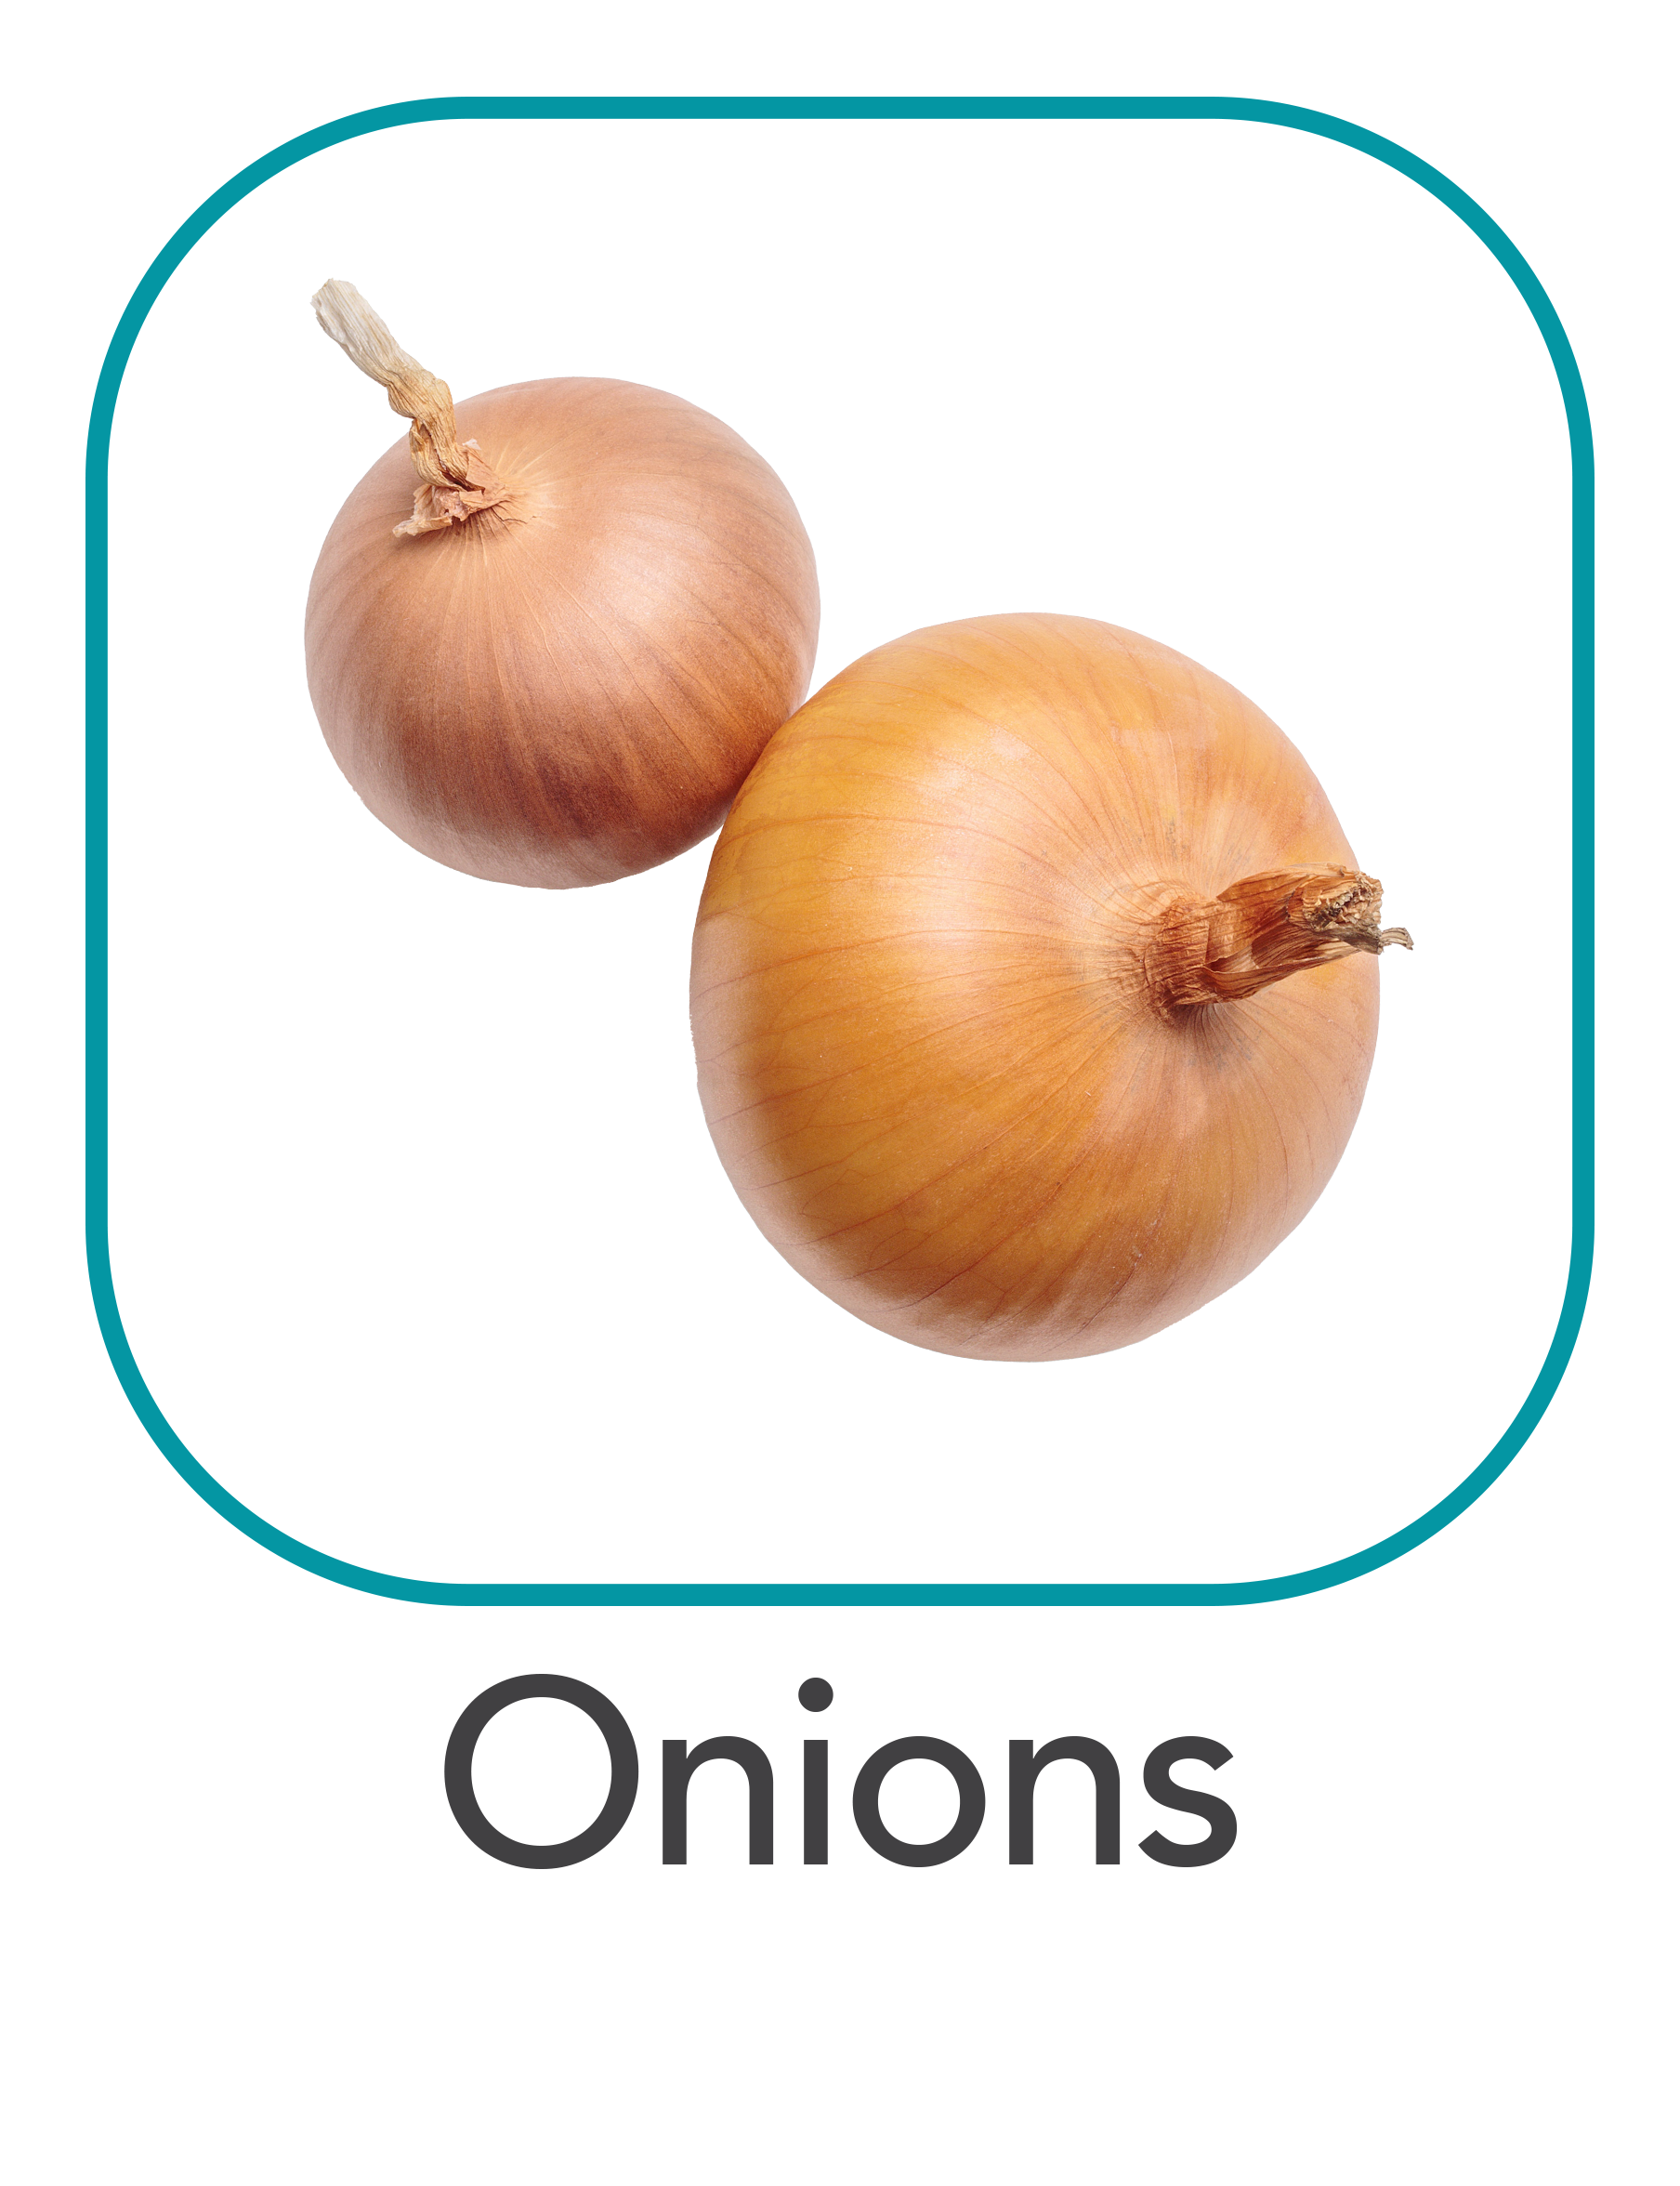 onions_web.png